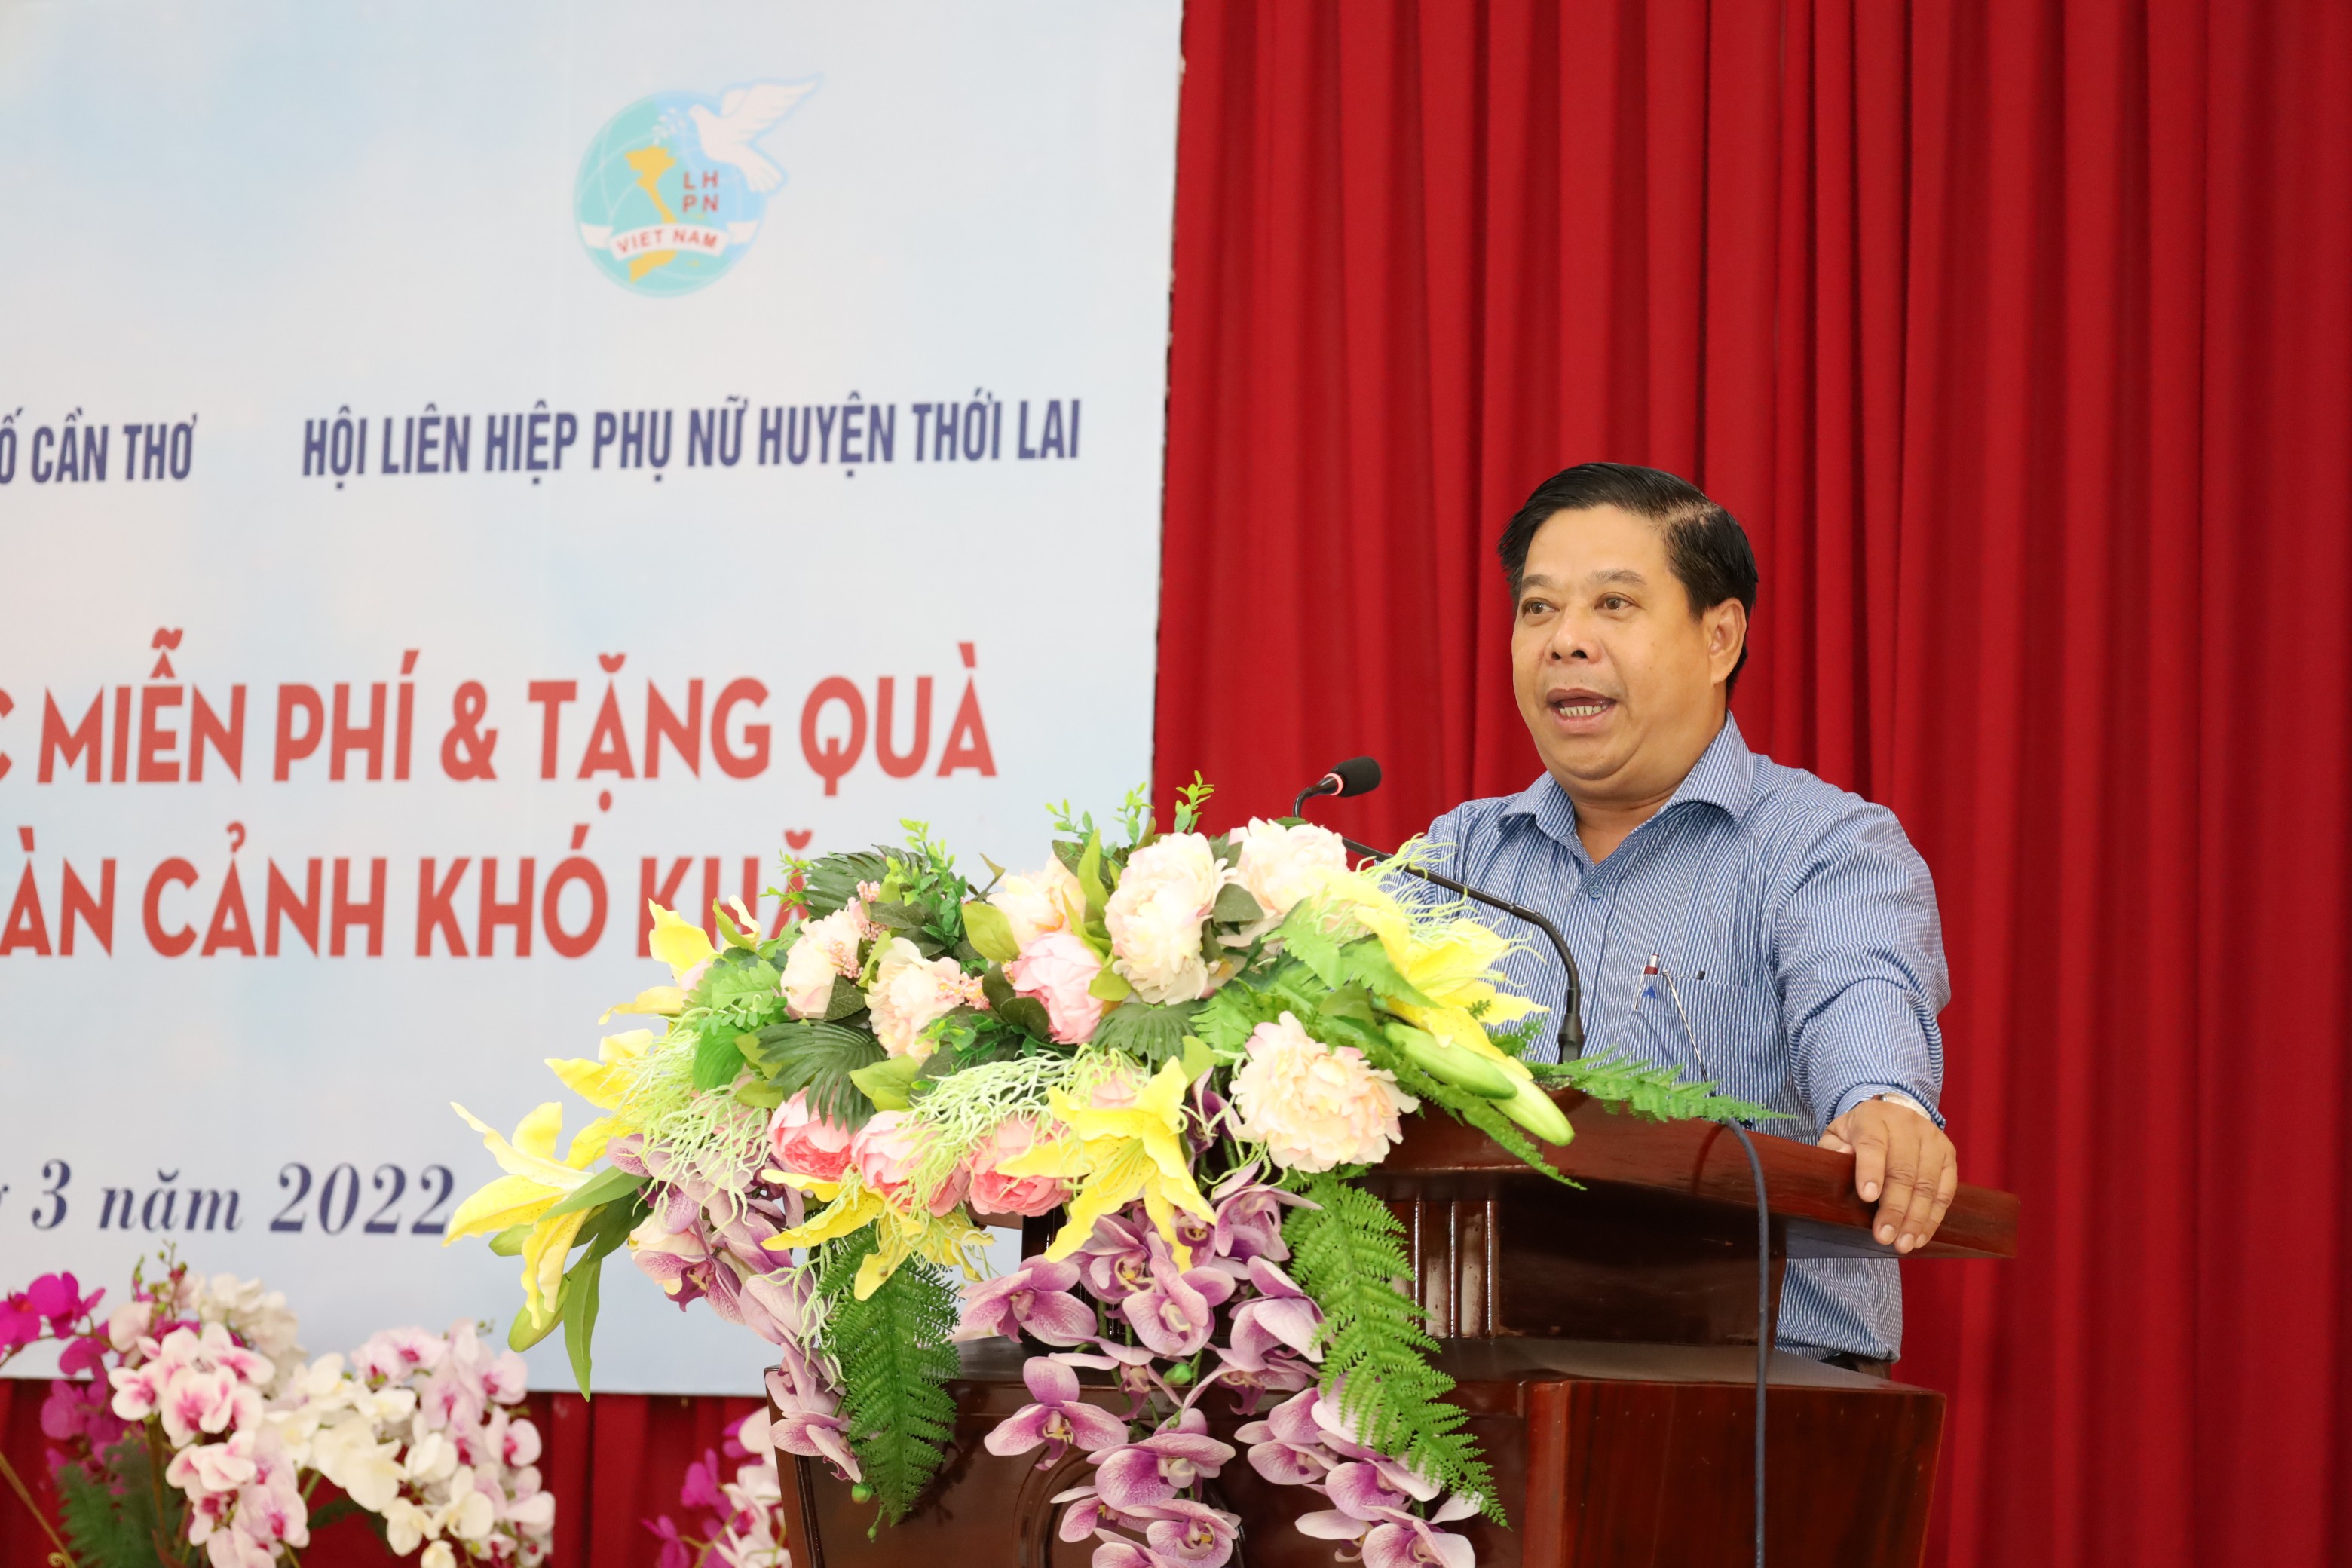 Ông Nguyễn Thành Út – Phó Bí thư Huyện ủy, Chủ tịch UBND huyện Thới Lai phát biểu tại chương trình khám bệnh, cấp thuốc miễn phí.